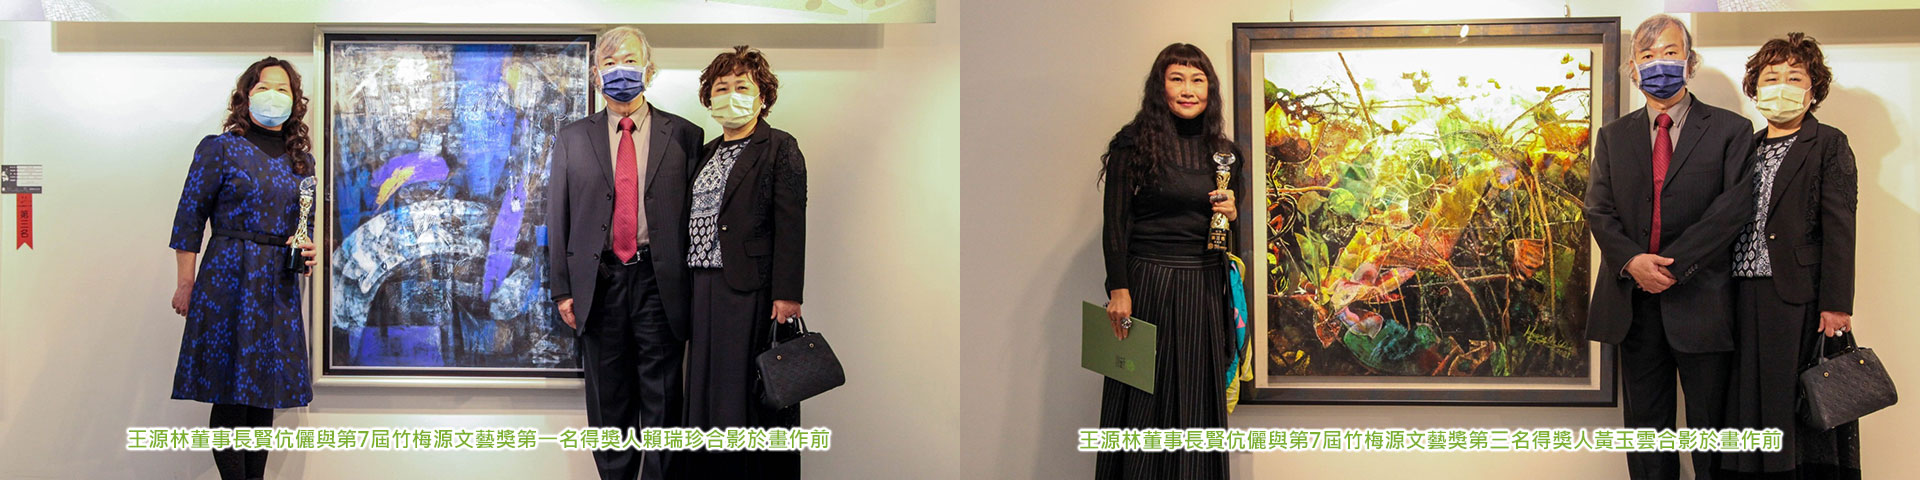 王元林主席夫妻は第7回竹美園文芸賞の受賞者とともに絵画の前で集合写真を撮った